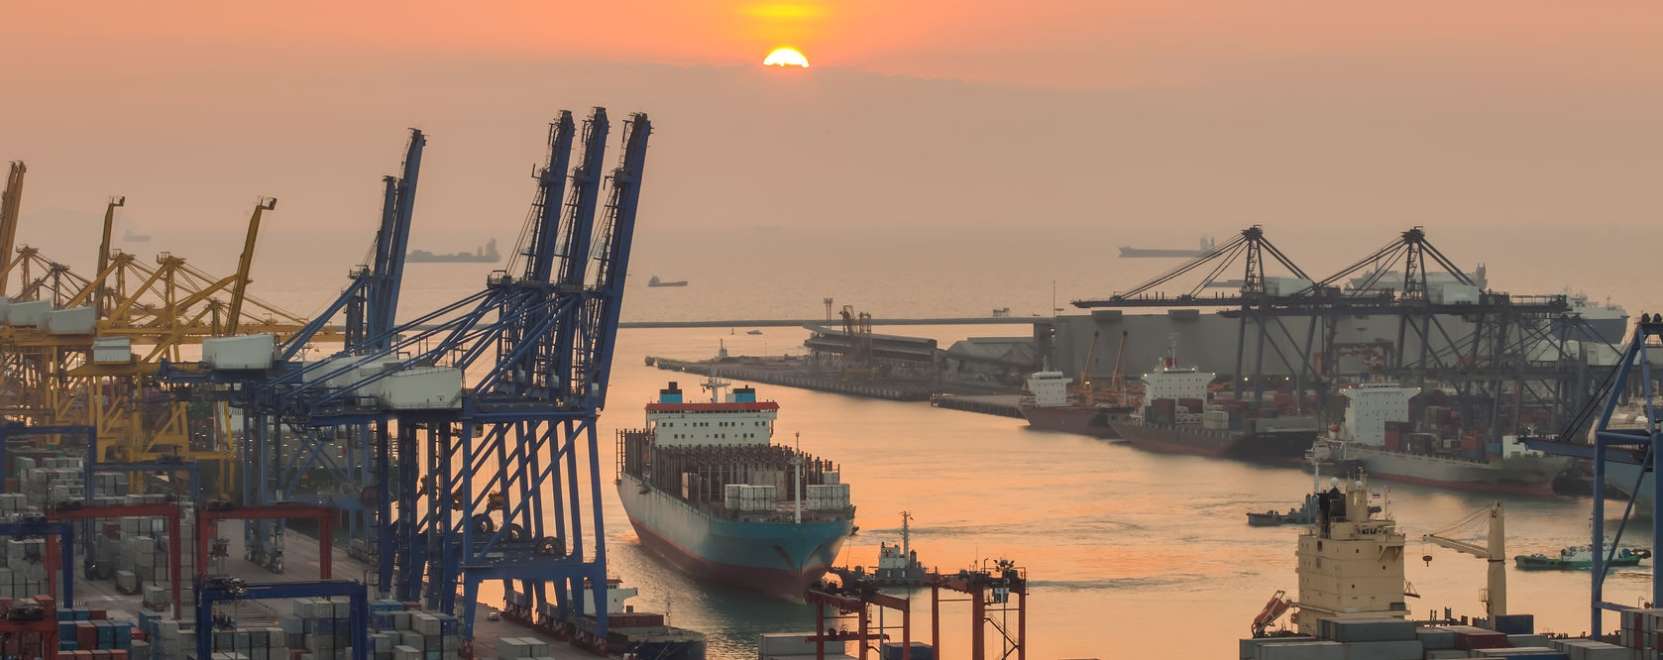 Rotterdam lehet a világ legokosabb kikötője